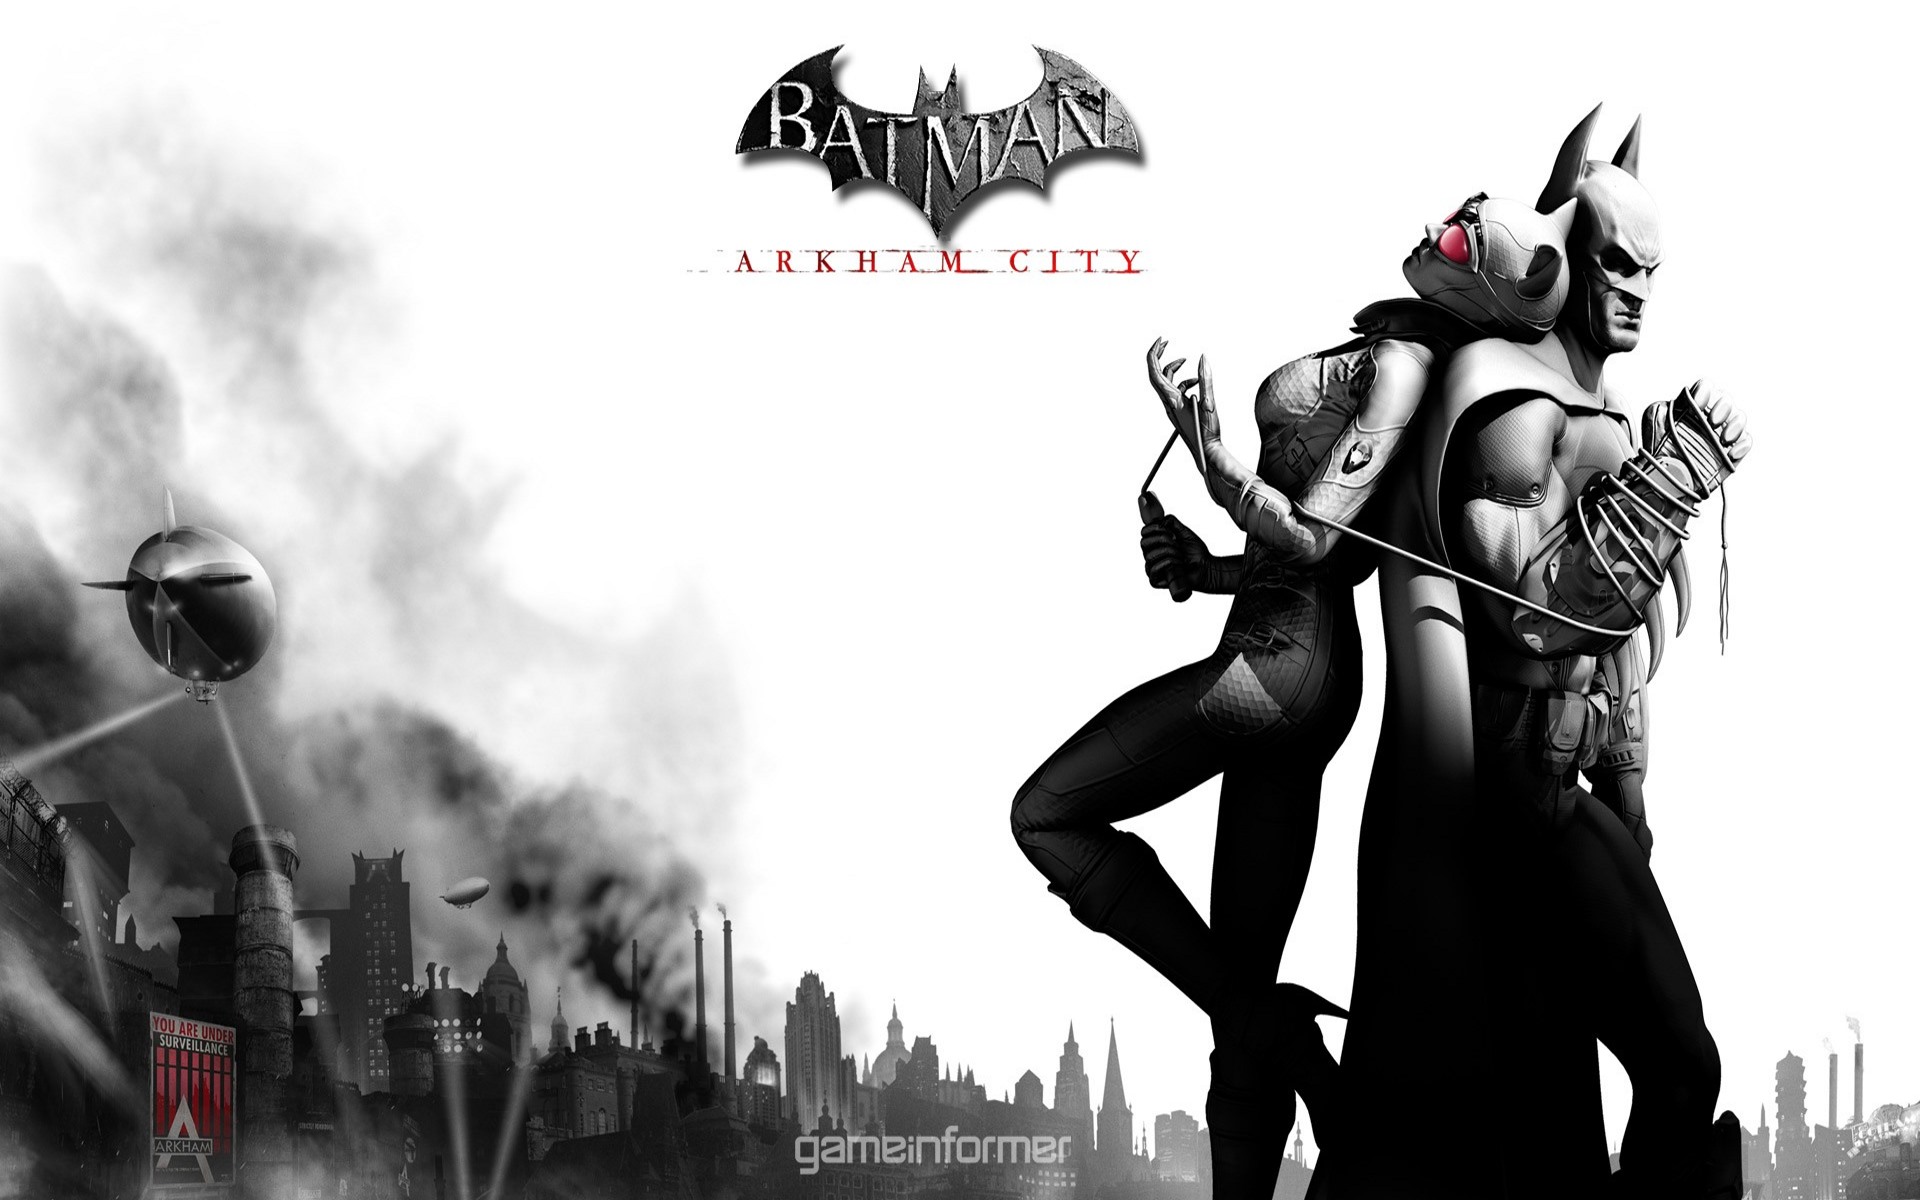 fond d'écran de la ville d'arkham,personnage fictif,homme chauve souris,conception graphique,supervillain,illustration